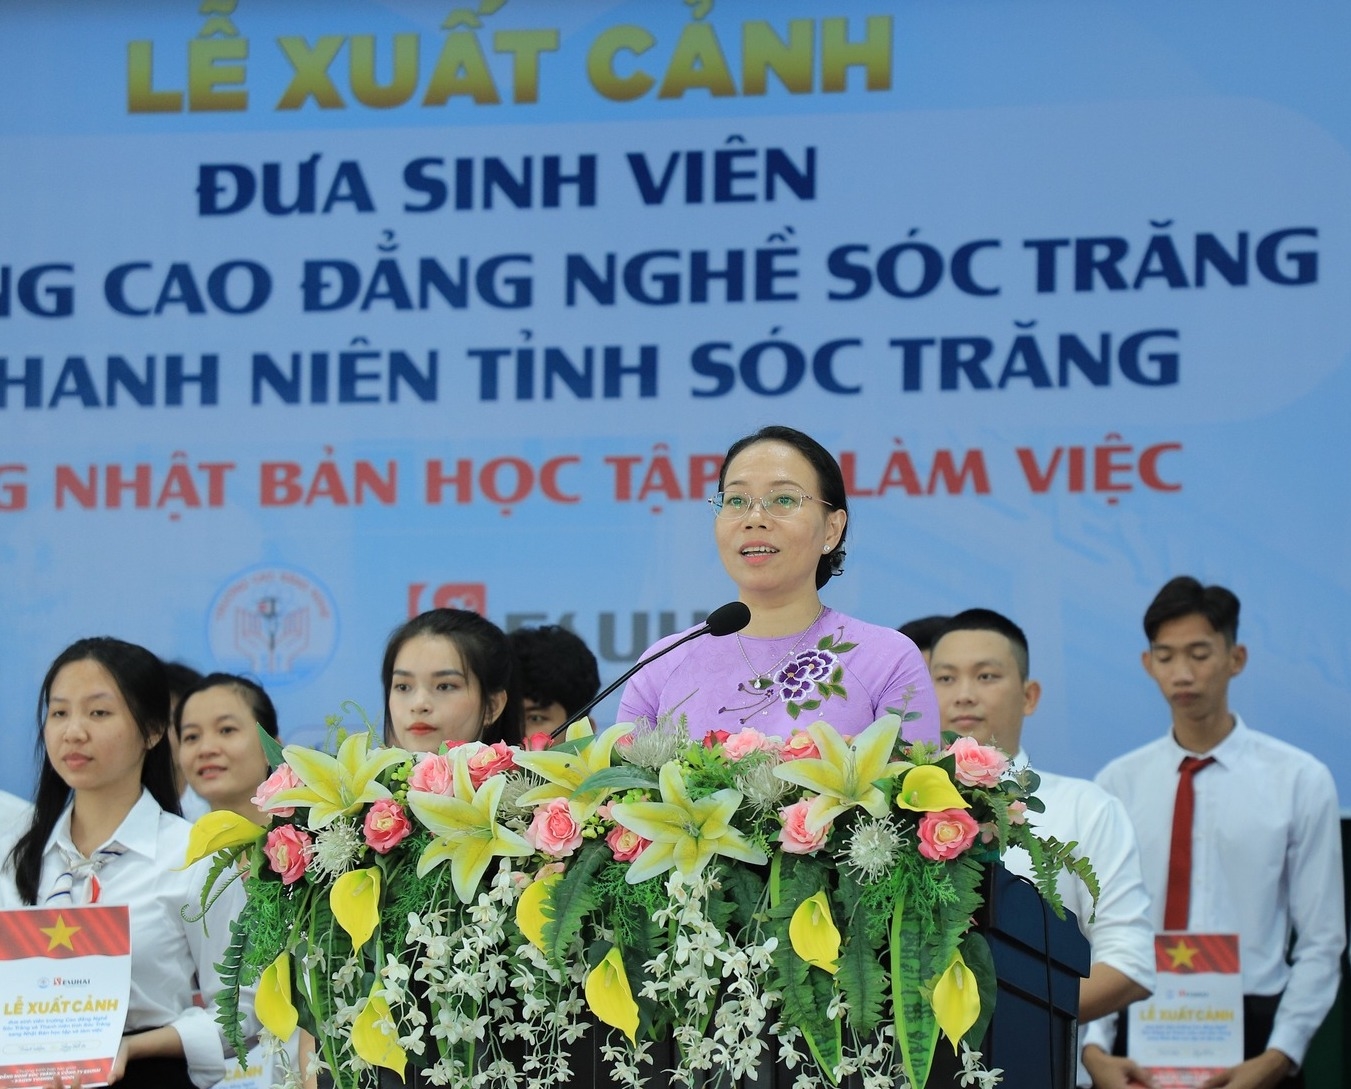 Bà Huỳnh Thị Diễm Ngọc - Phó chủ tịch UBND tỉnh Sóc Trăng, ân cần thăm hỏi, động viên học sinh, sinh viên tại buổi lễ xuất cảnh đi Nhật Bản học tập và làm việc 